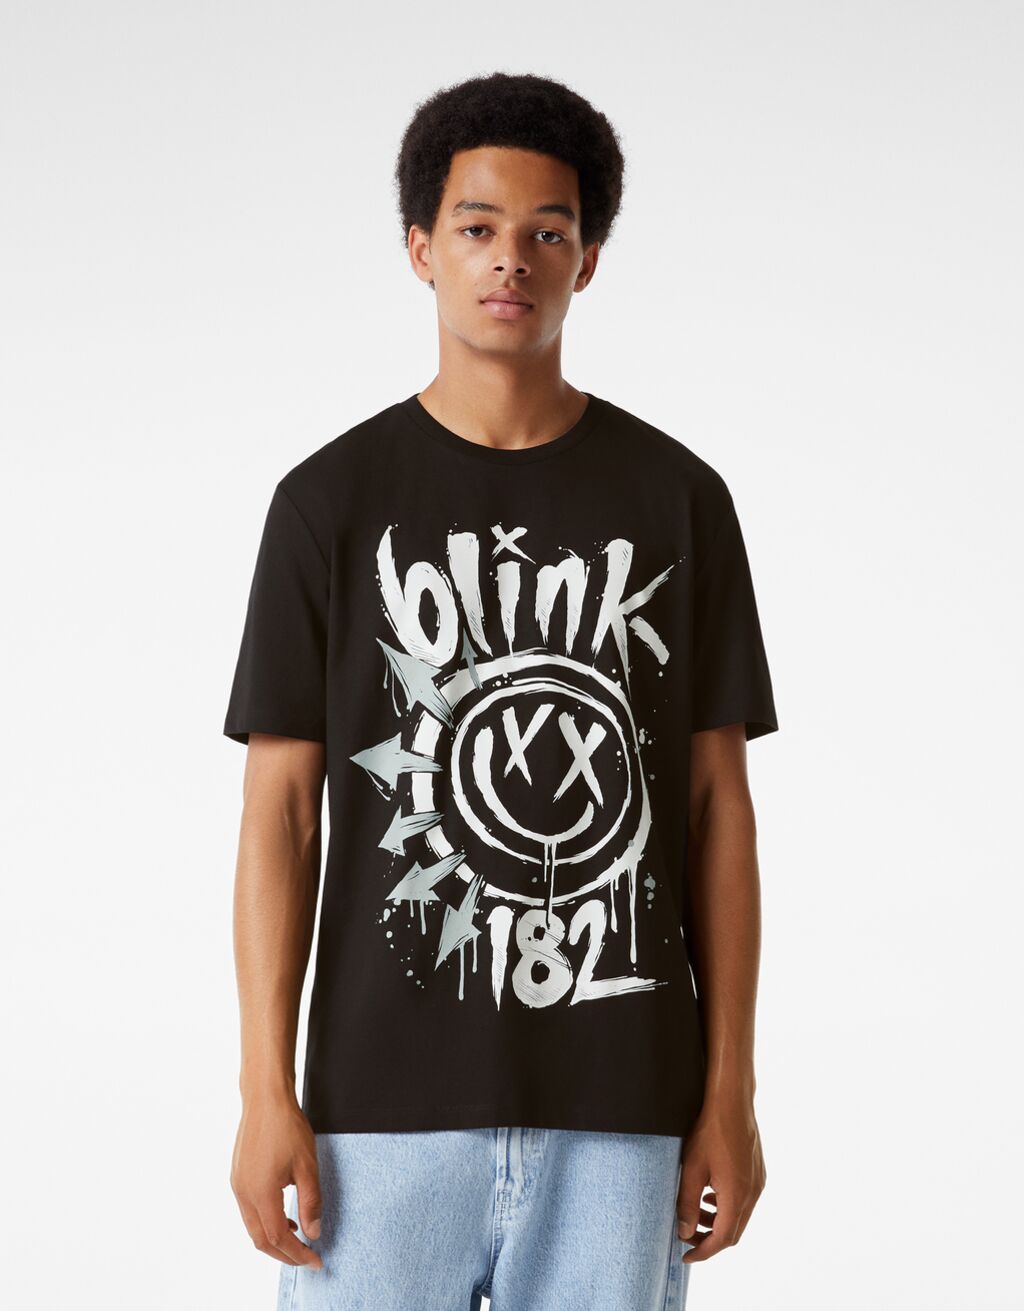 Tričko s krátkym rukávom pravidelného strihu s potlačou Blink 182